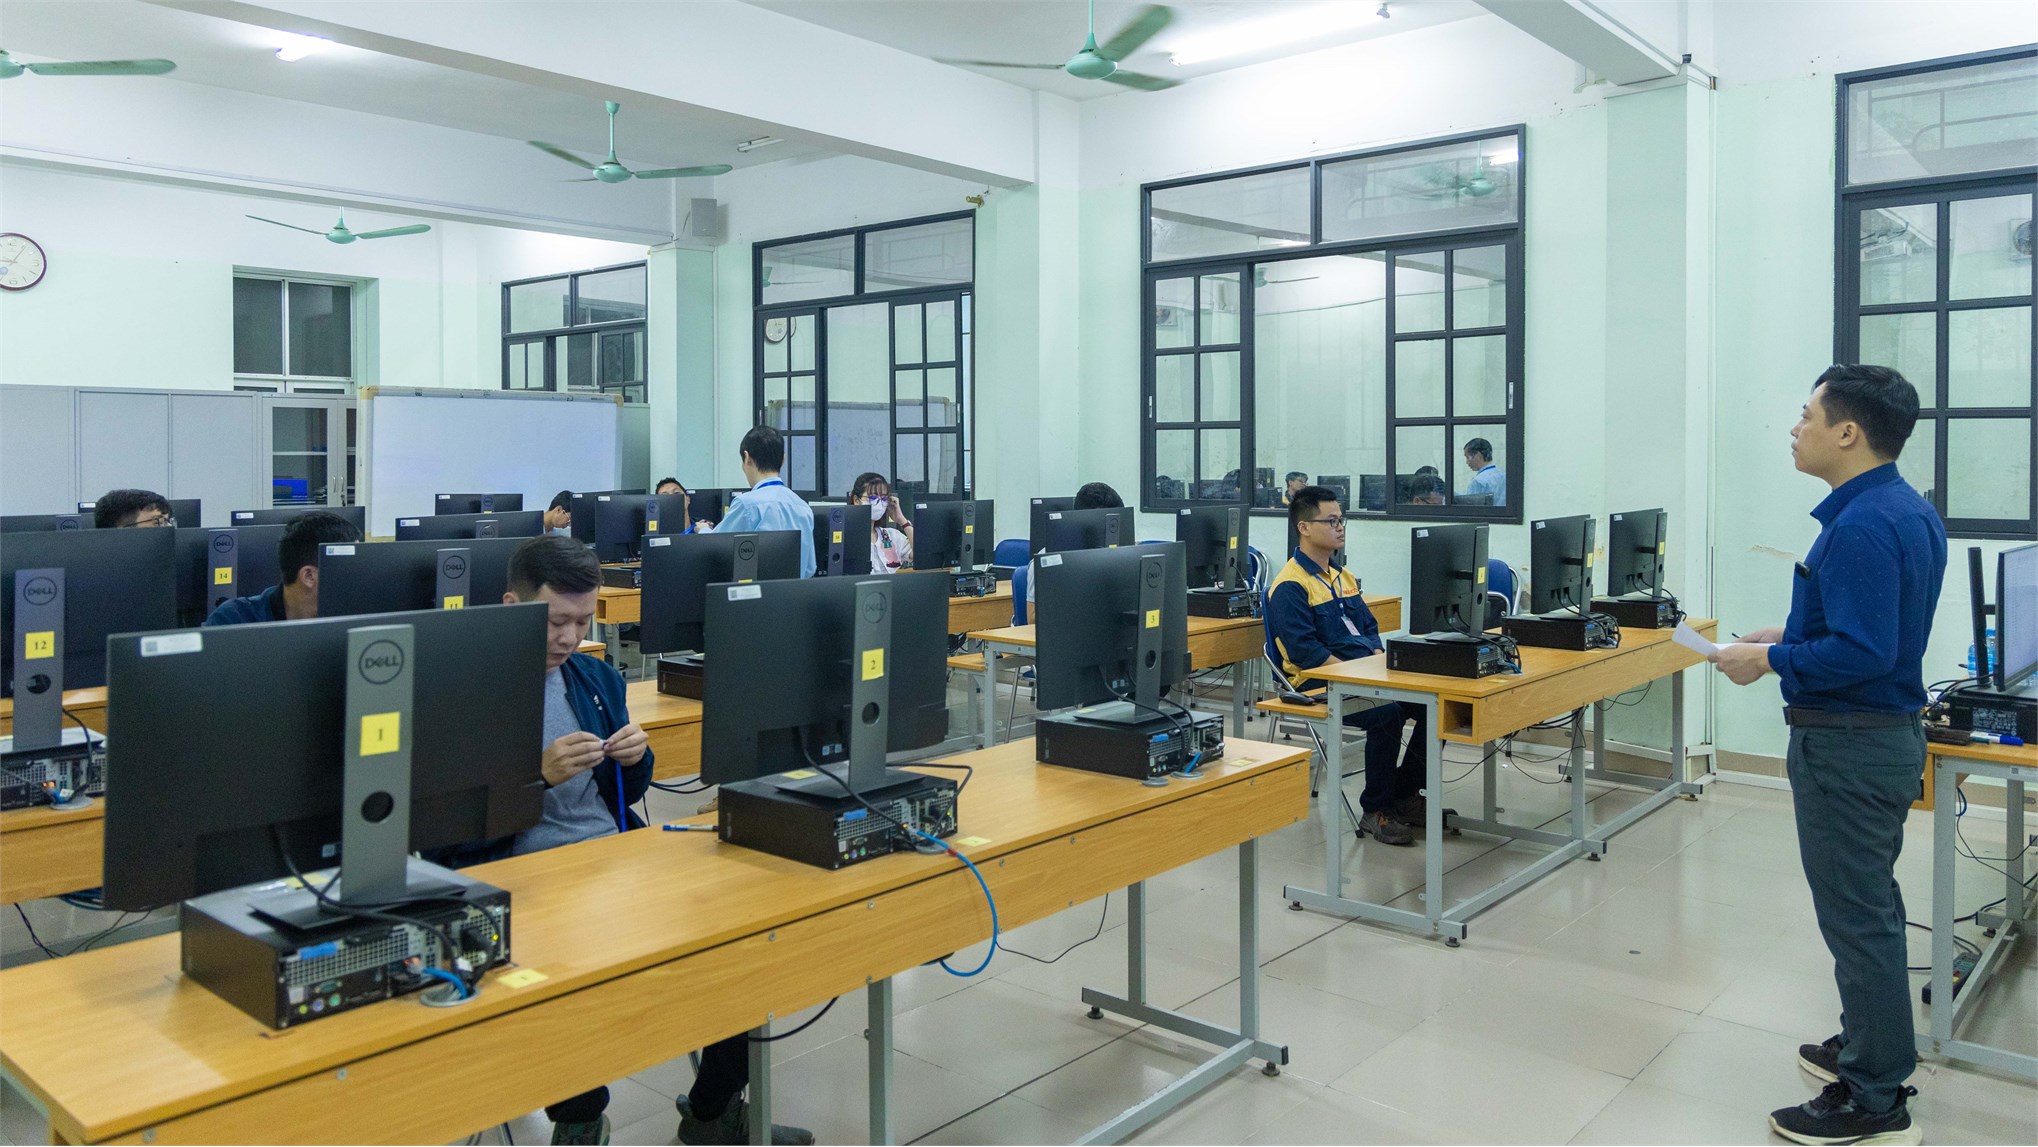 Hội thi thợ giỏi ngành Xây dựng Hà Nội lần thứ III diễn ra thành công tại Đại học Công nghiệp Hà Nội